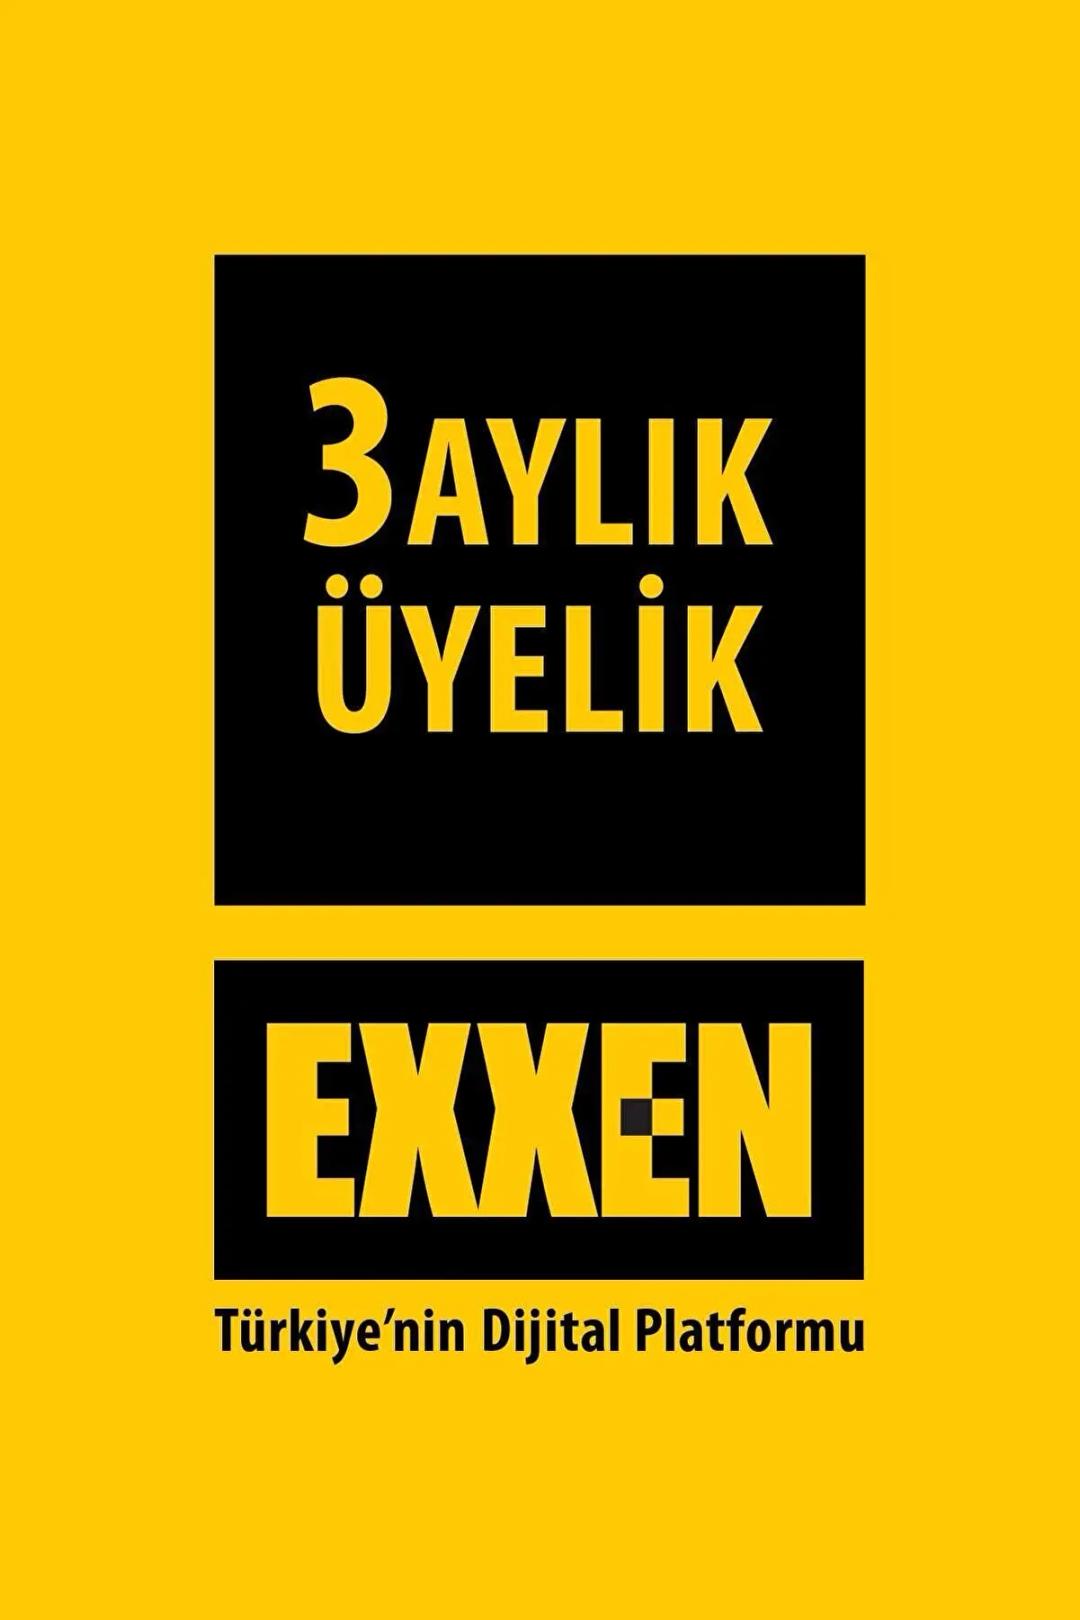 Exxen 3 Aylık Üyelik Kodu - Reklamsız